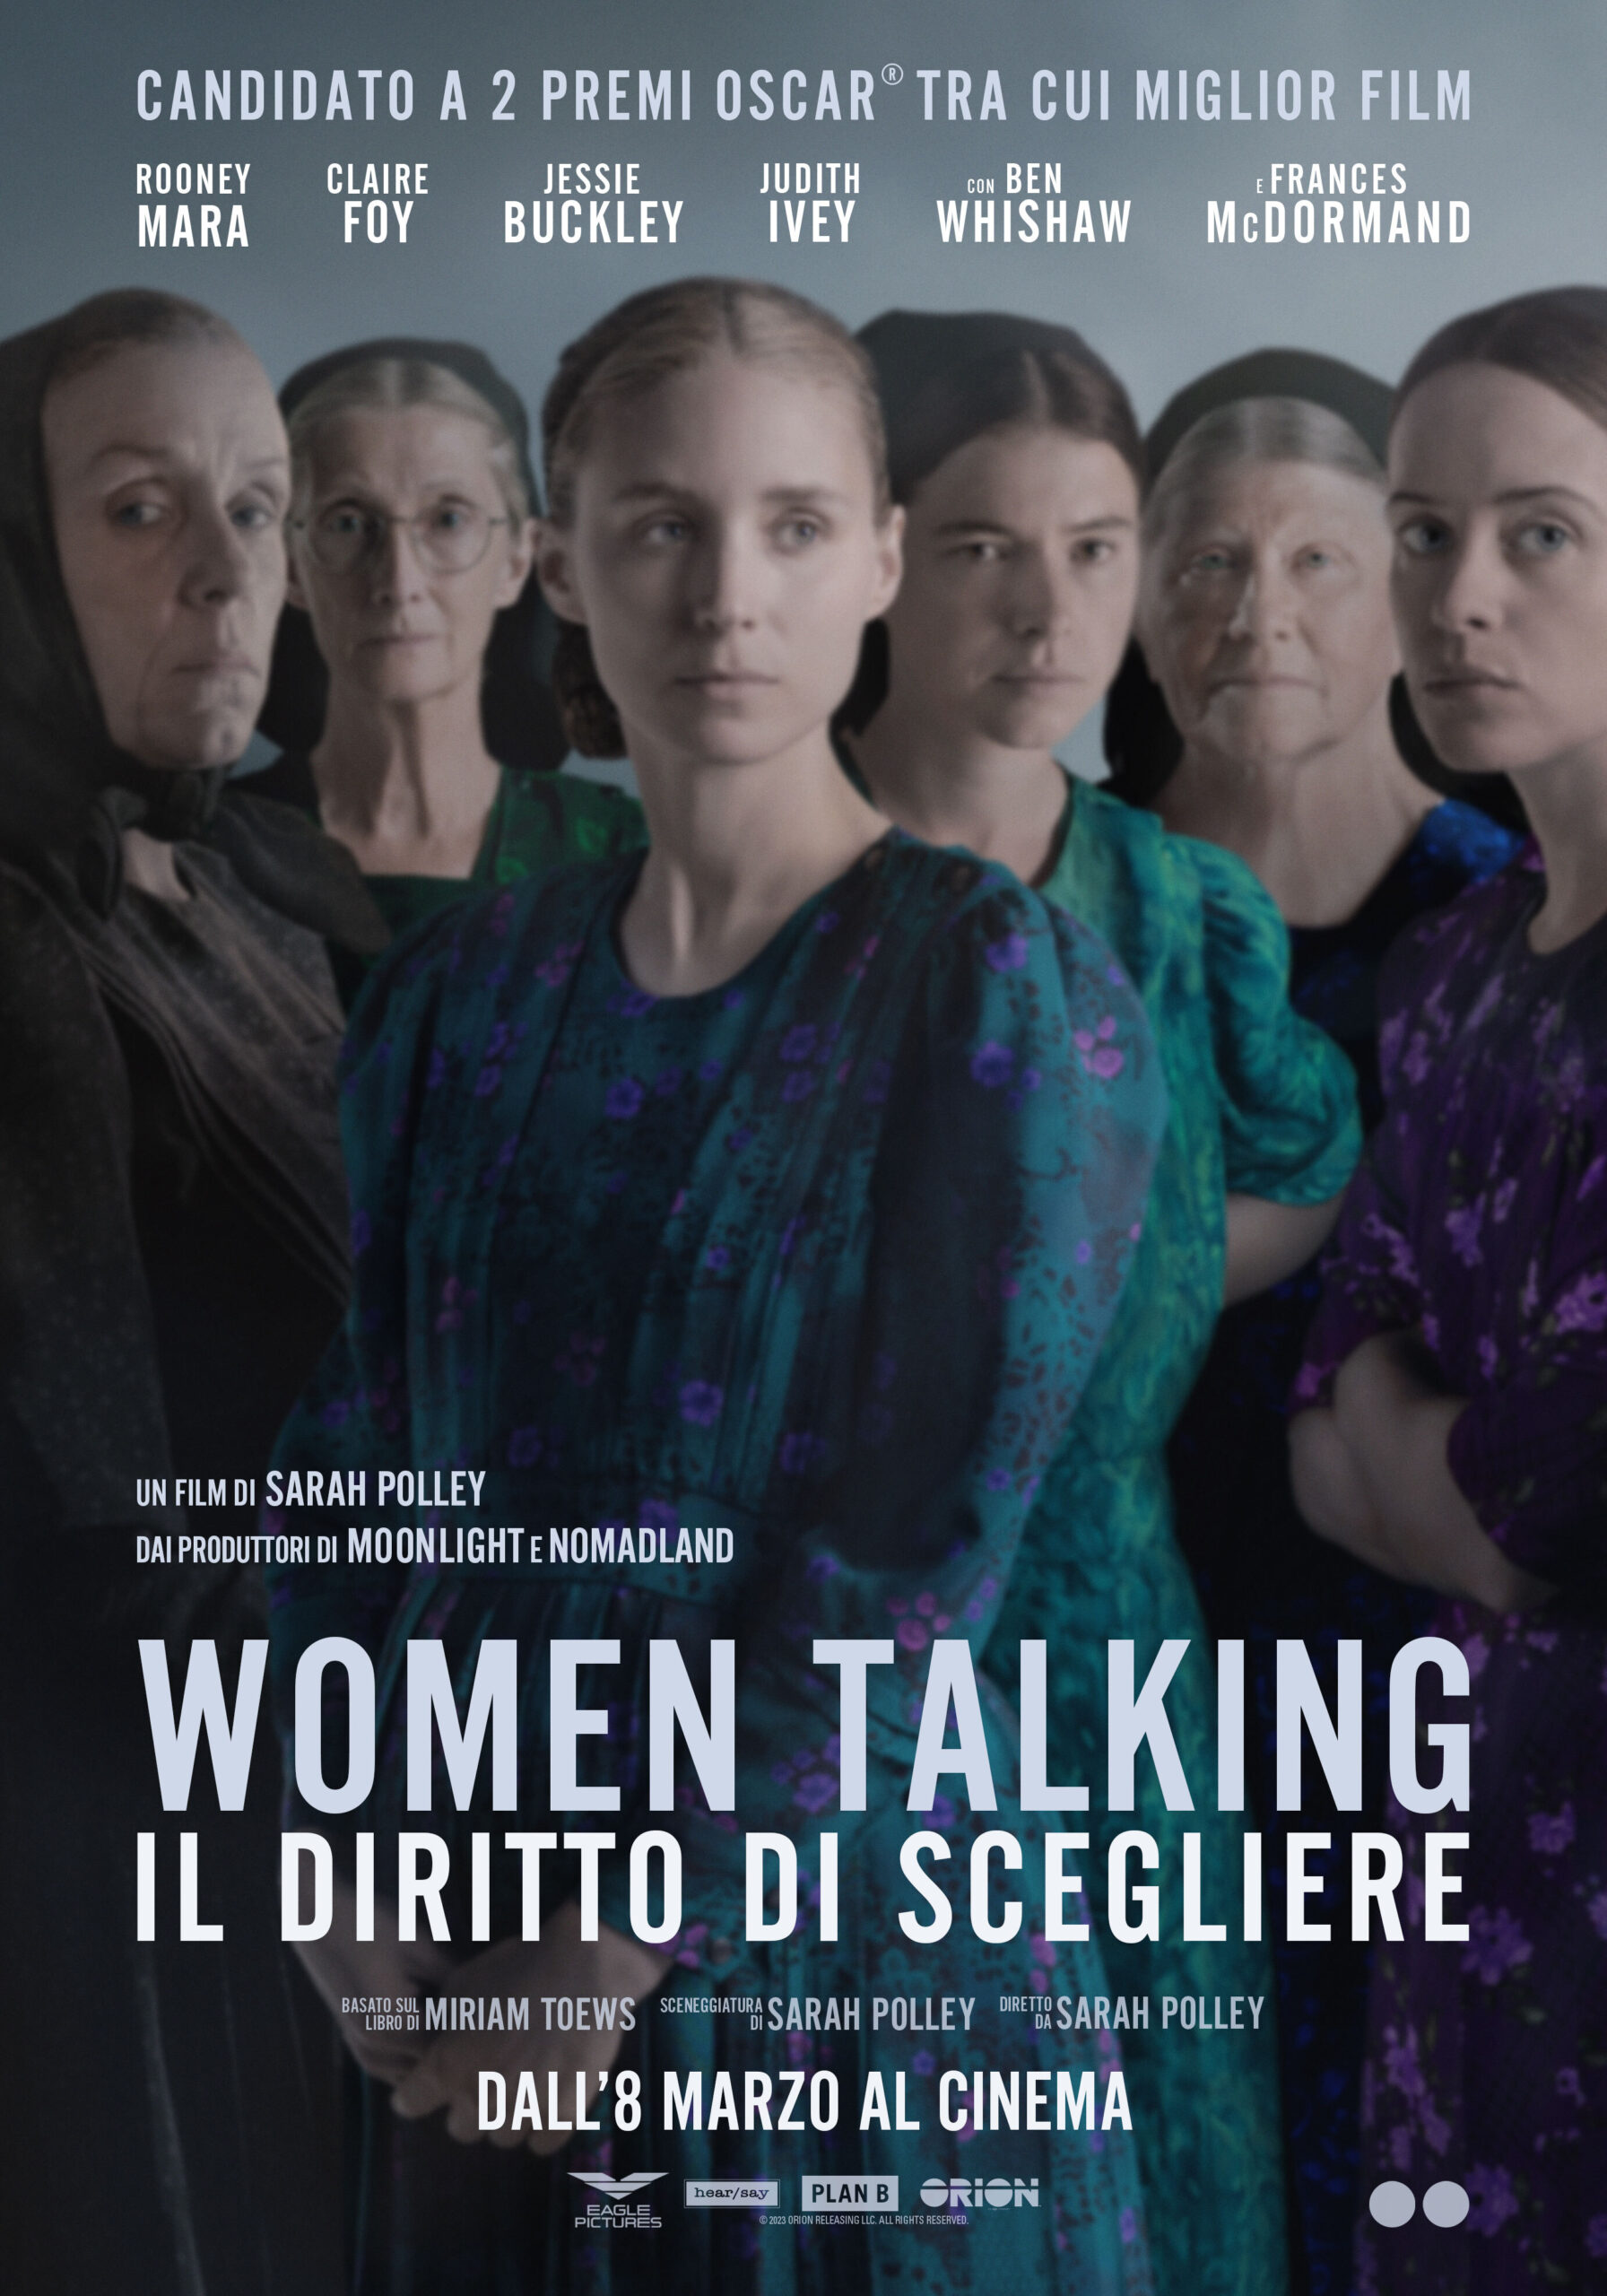 Women Talking – Il diritto di scegliere. Dall’8 marzo nelle sale